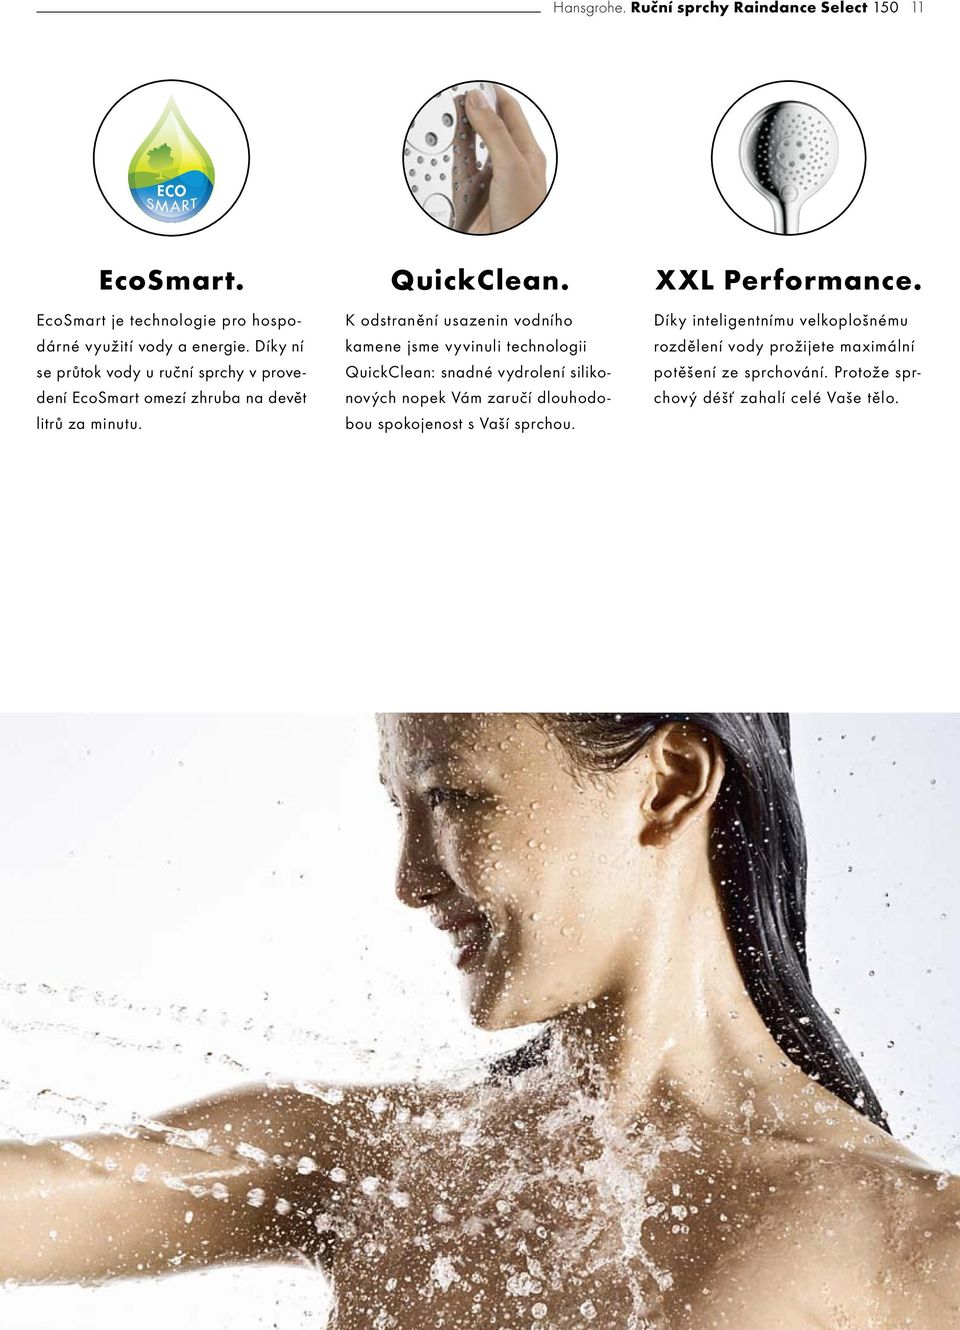 Díky ní se průtok vody u ruční sprchy v provedení EcoSmart omezí zhruba na devět litrů za minutu.